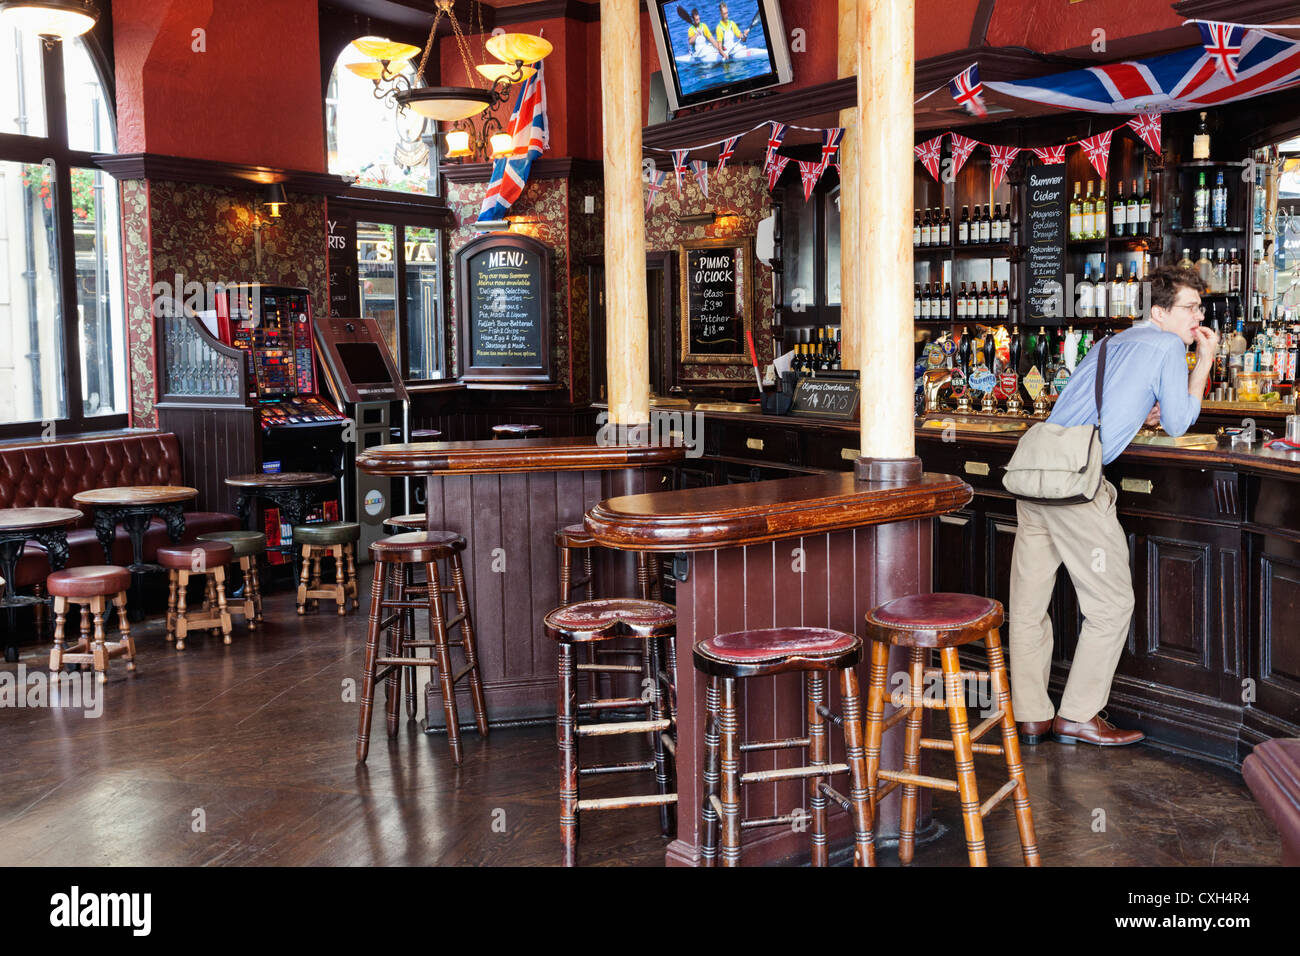 Inspirado em pubs da Inglaterra, bar especializado em sinuca abre em prédio  icônico de Porto Alegre